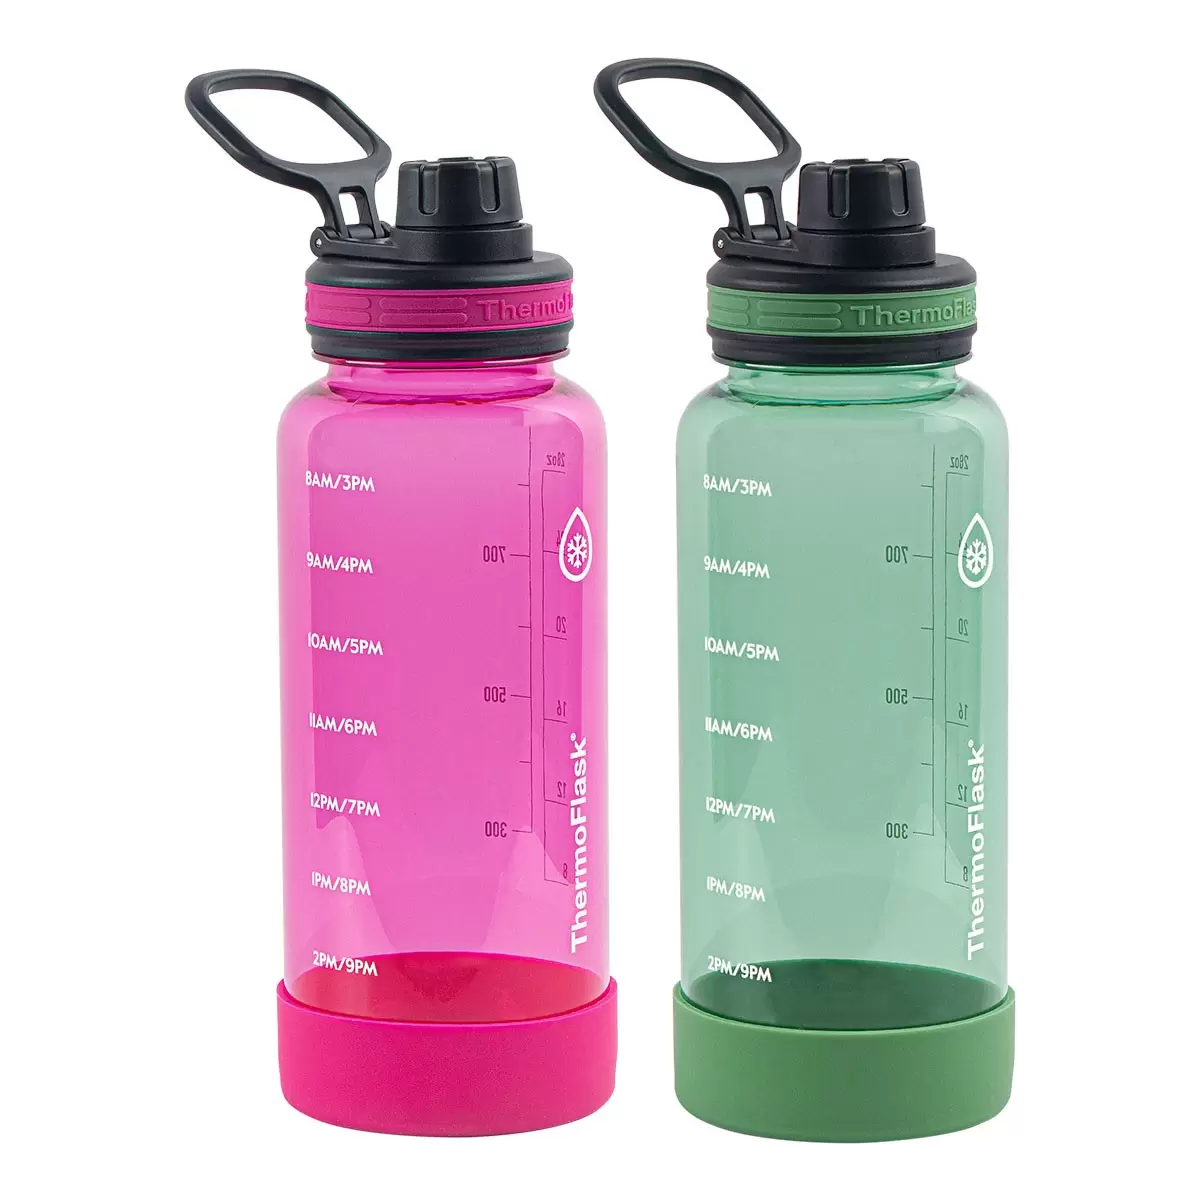 Thermoflask 隨身冷水瓶 950毫升 X 2件組 粉色 + 綠色